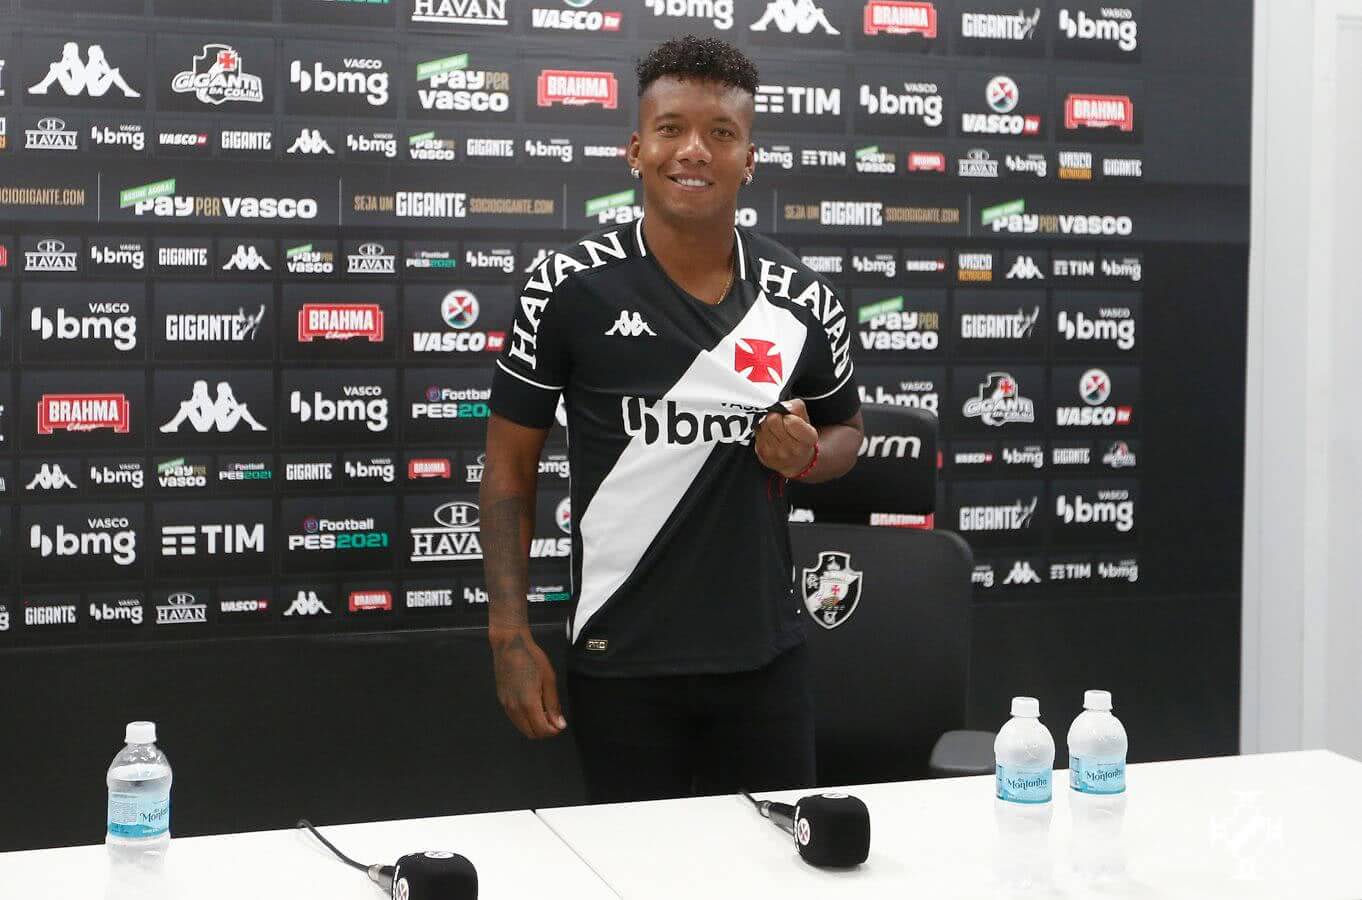 Jhon Sánchez posa com a camisa do Vasco